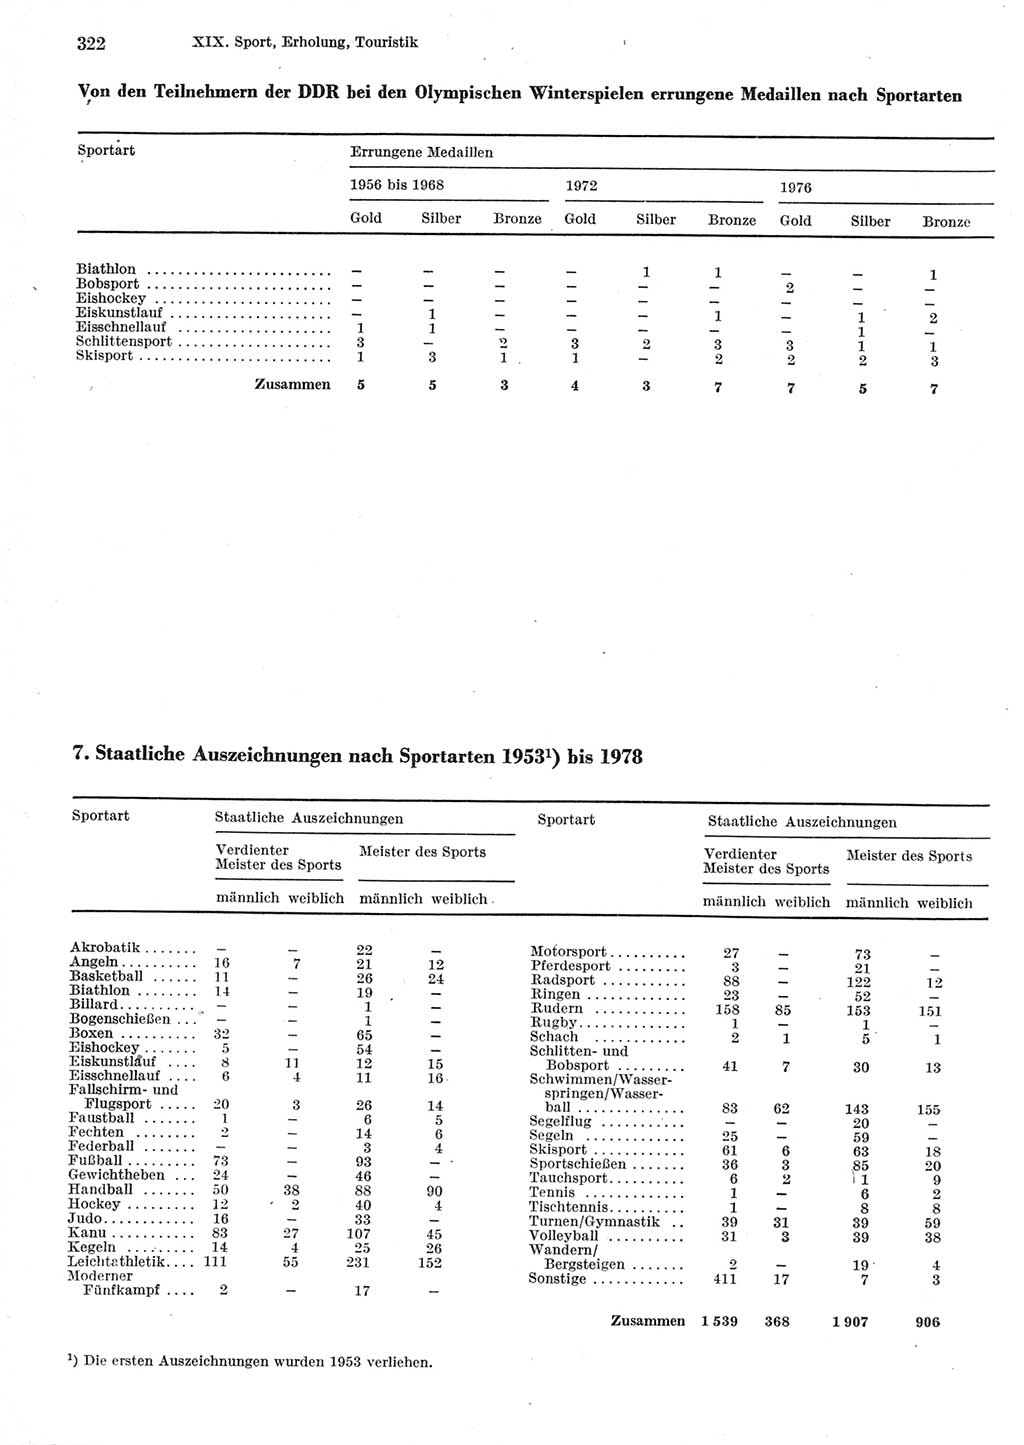 Statistisches Jahrbuch der Deutschen Demokratischen Republik (DDR) 1979, Seite 322 (Stat. Jb. DDR 1979, S. 322)